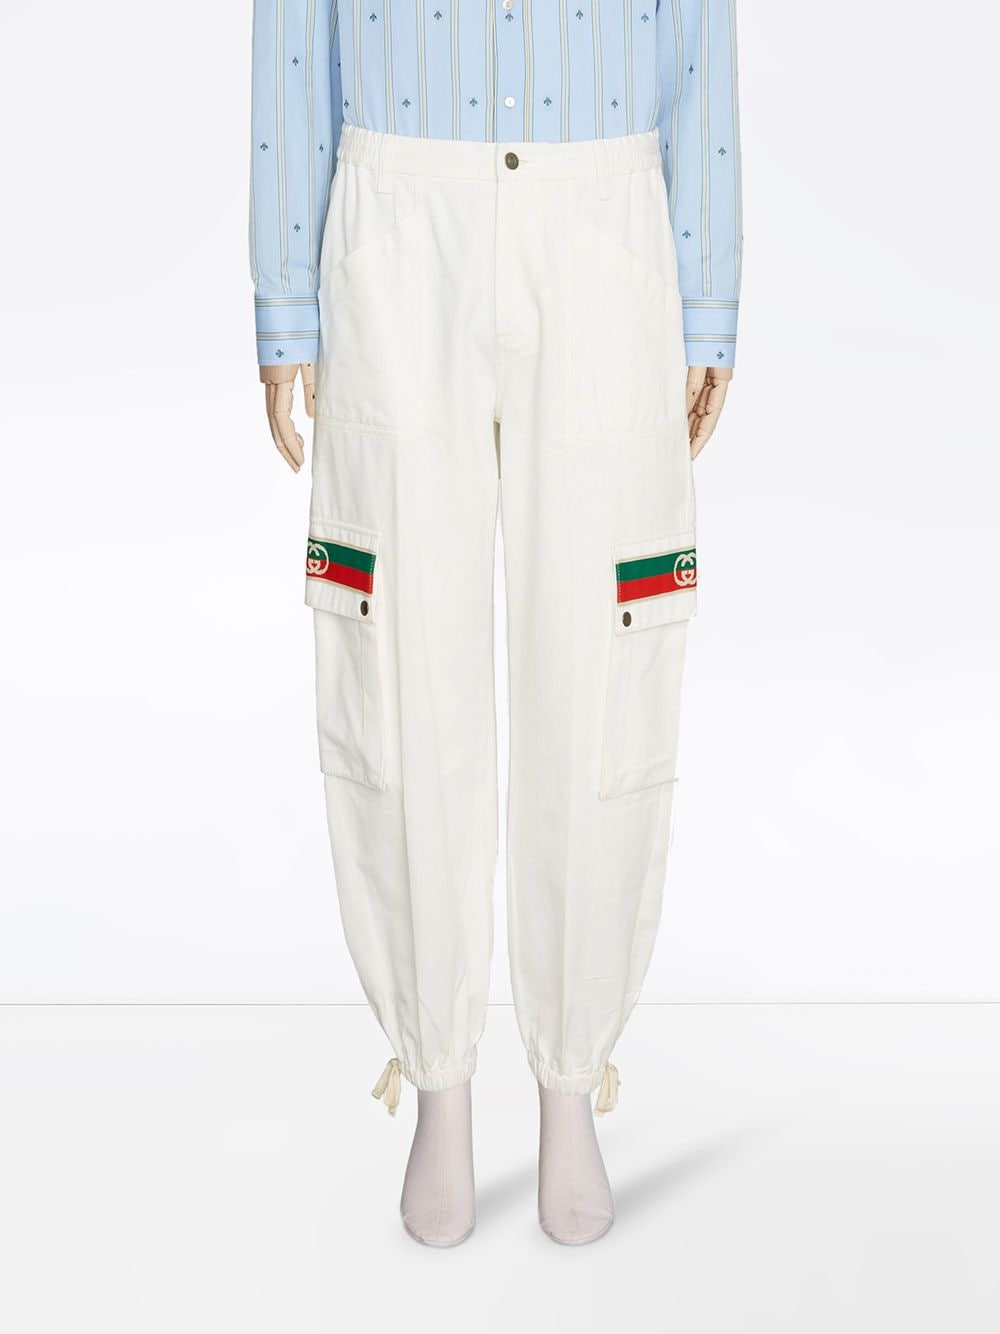 фото Gucci зауженные брюки с отделкой web